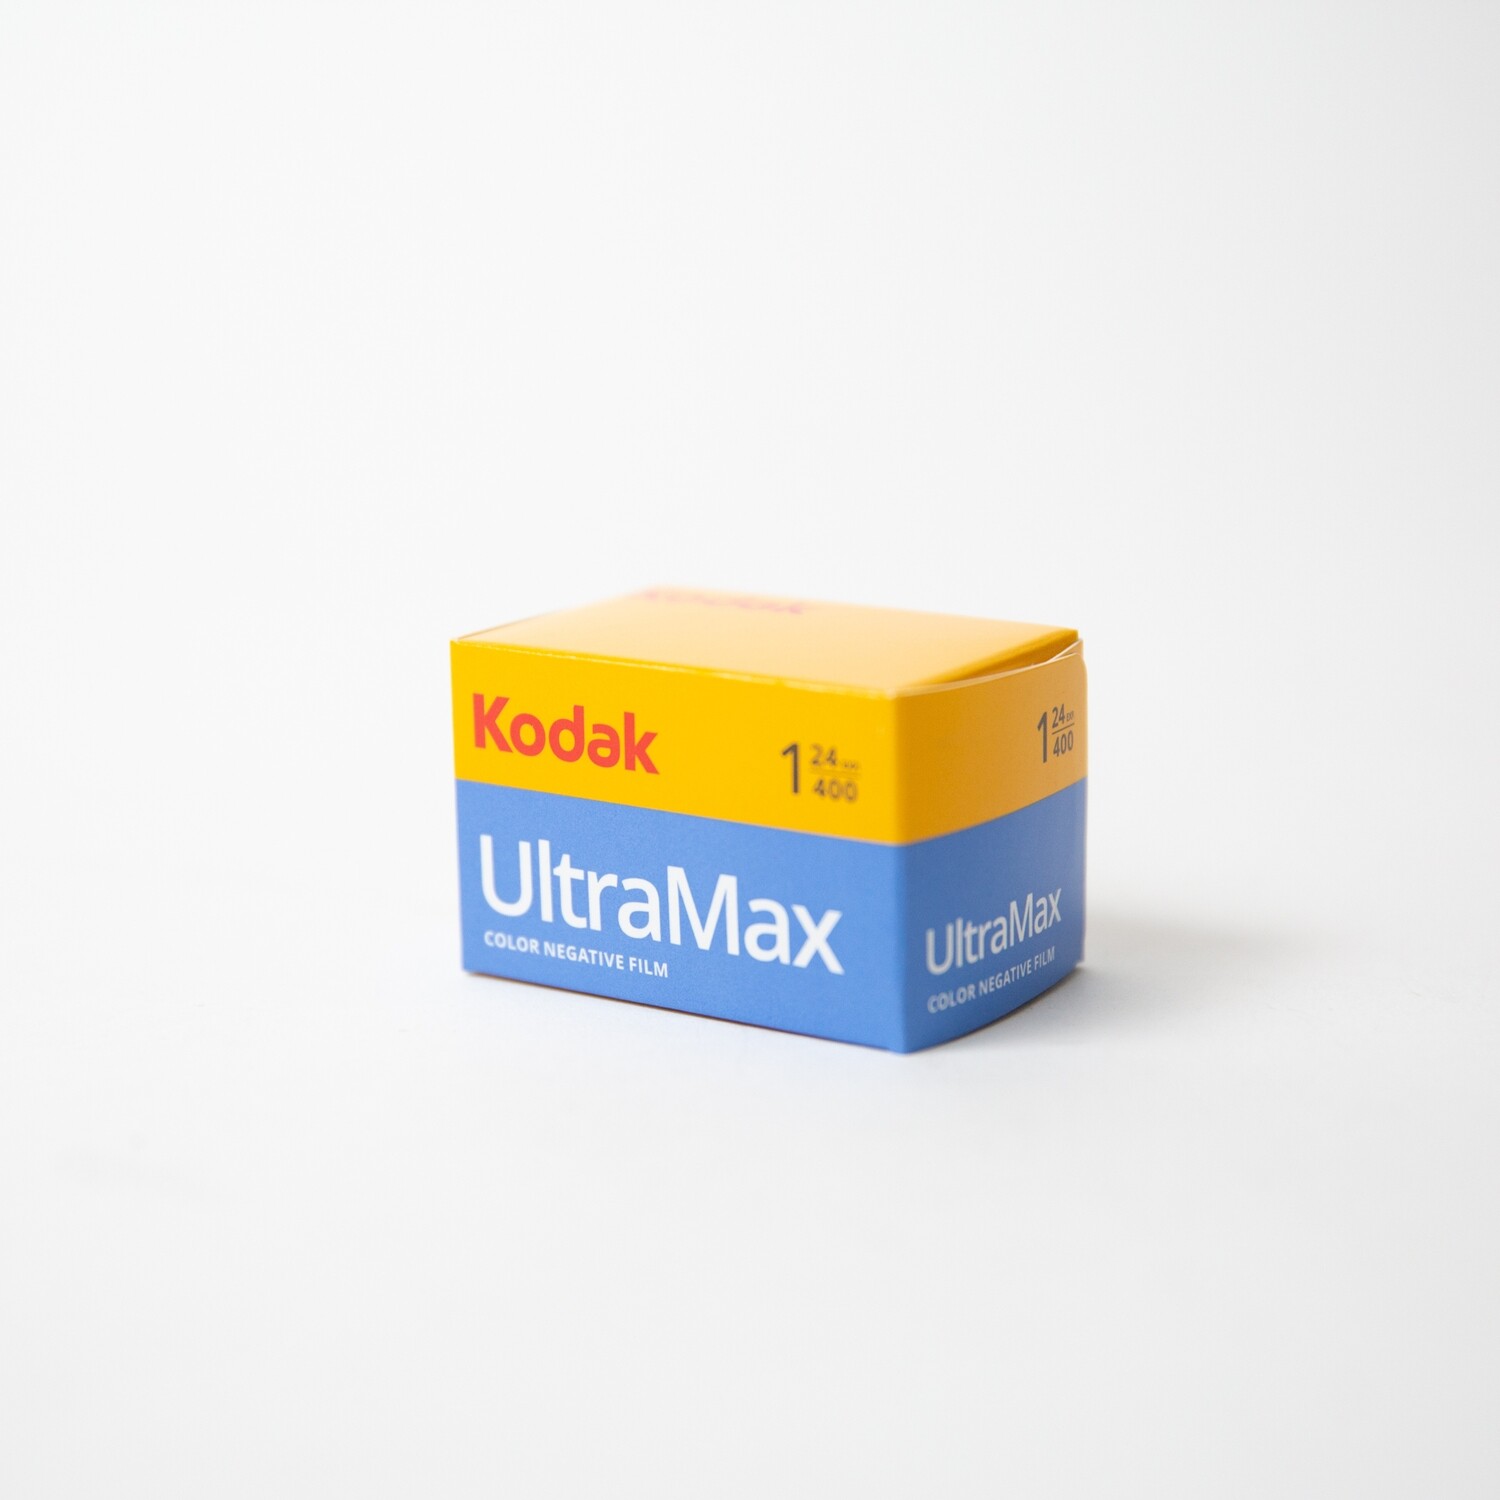 Kodak UltraMax 400 35mm [24 EXP]